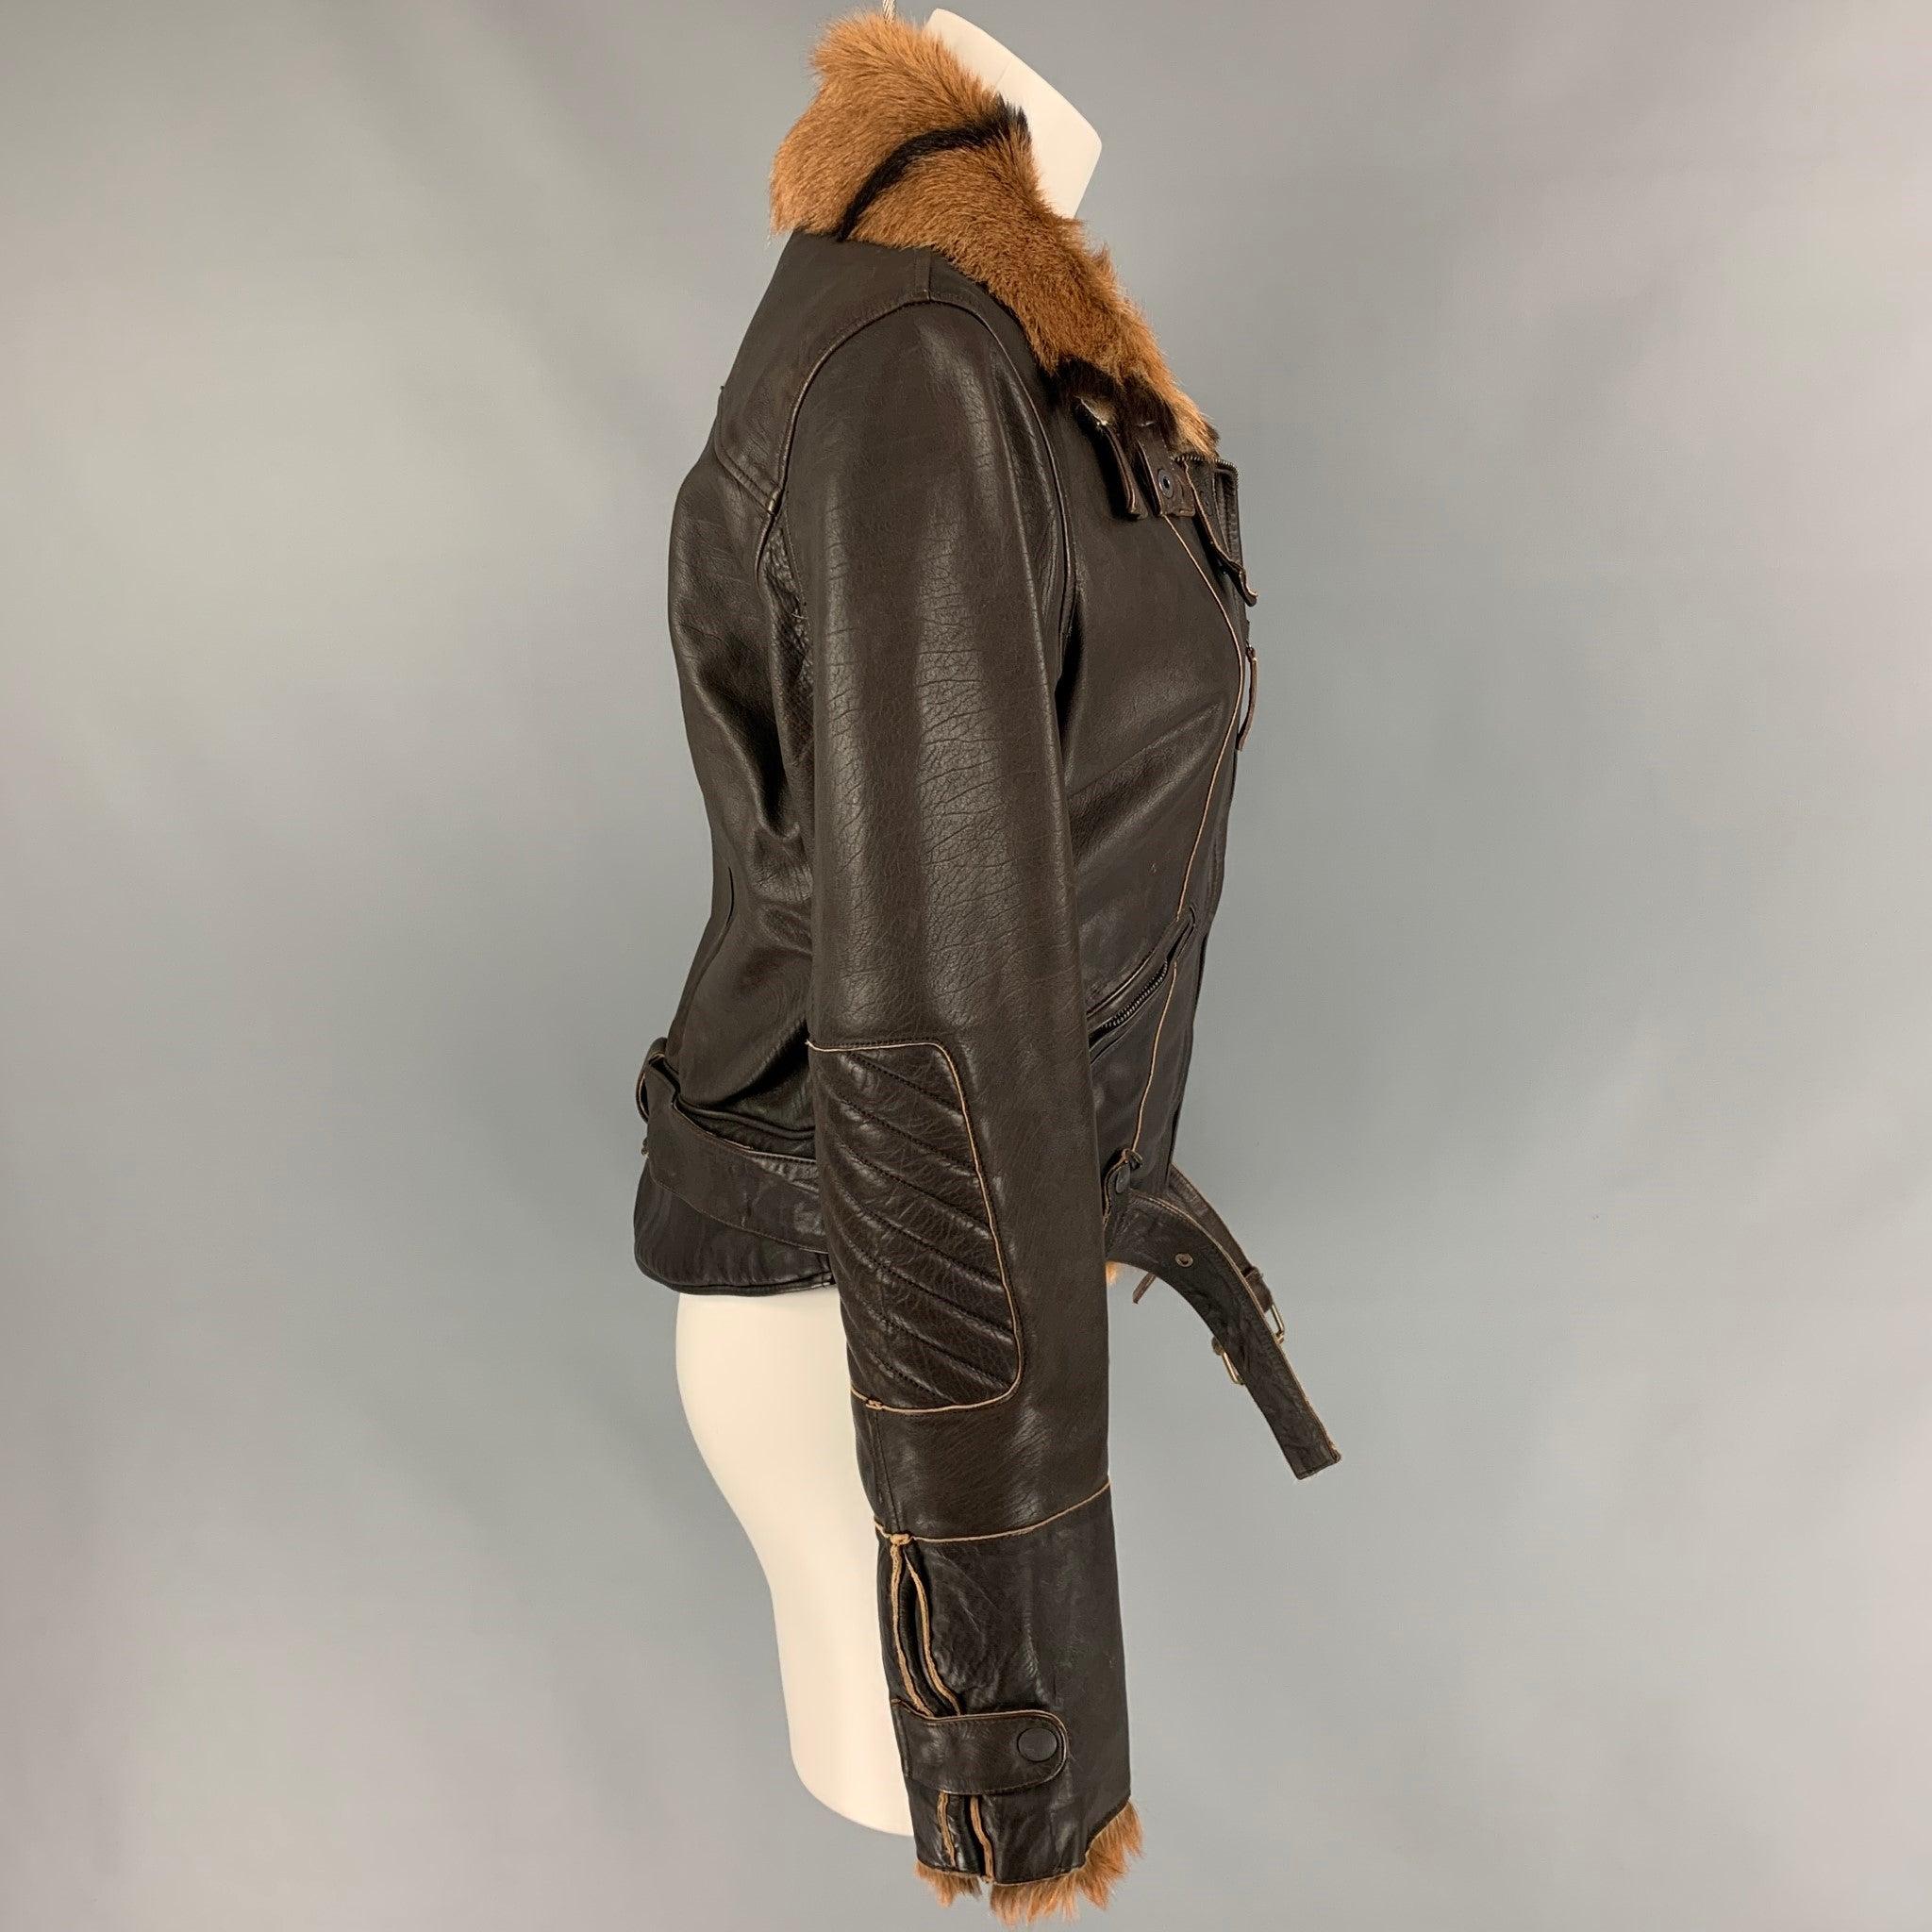 chamois leather jacket